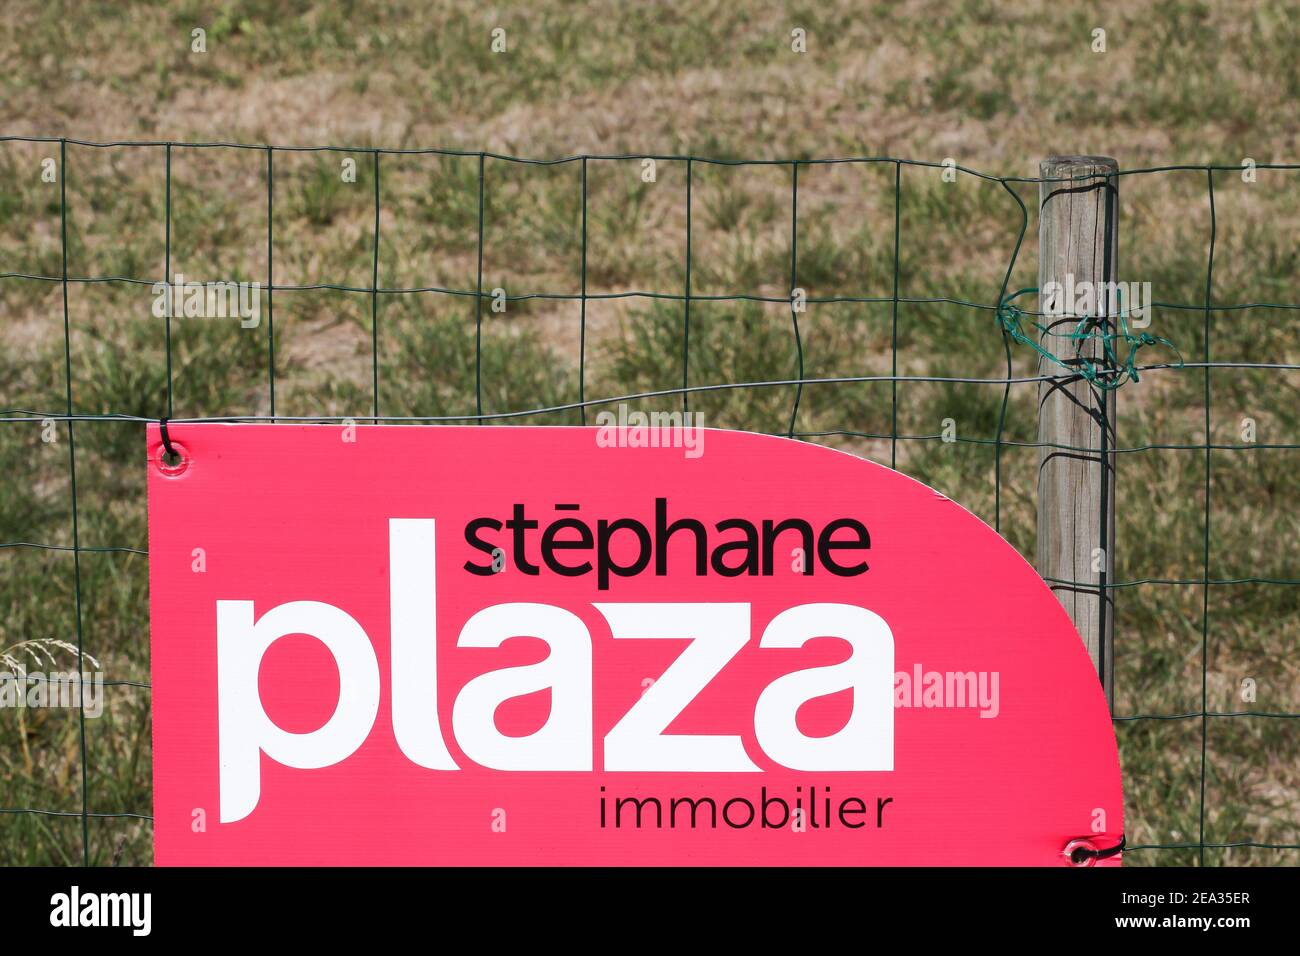 La Clayette, Frankreich - 12. September 2020: Stephane Plaza Logo auf einem Zaun. Stephane Plaza Immobilier ist ein französisches Netzwerk von Immobilienagenturen Stockfoto